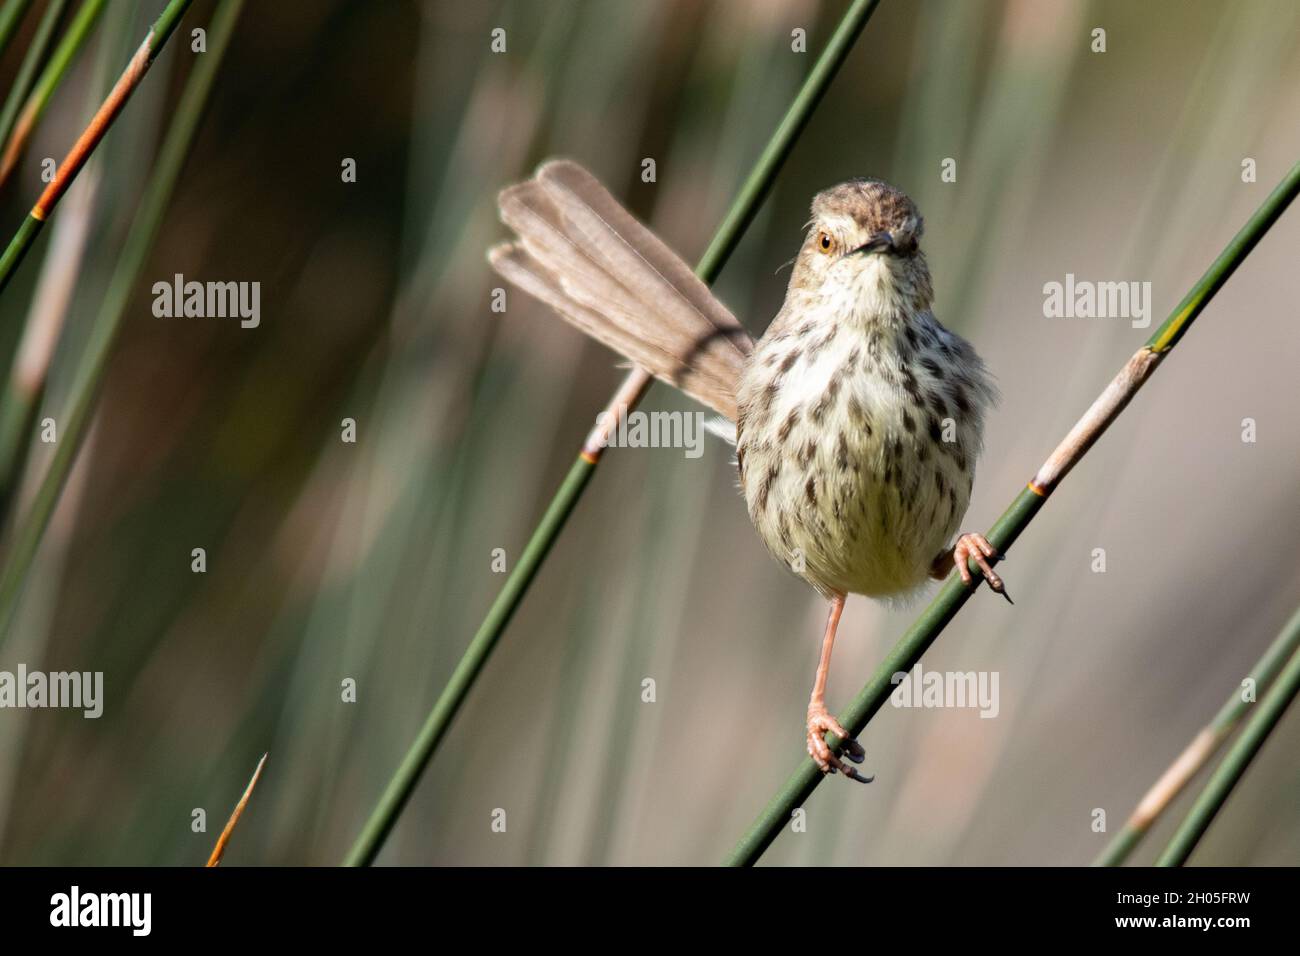 Un oiseau à pois brun est perché sur une lame d'herbe, regardant dans l'appareil photo. Banque D'Images